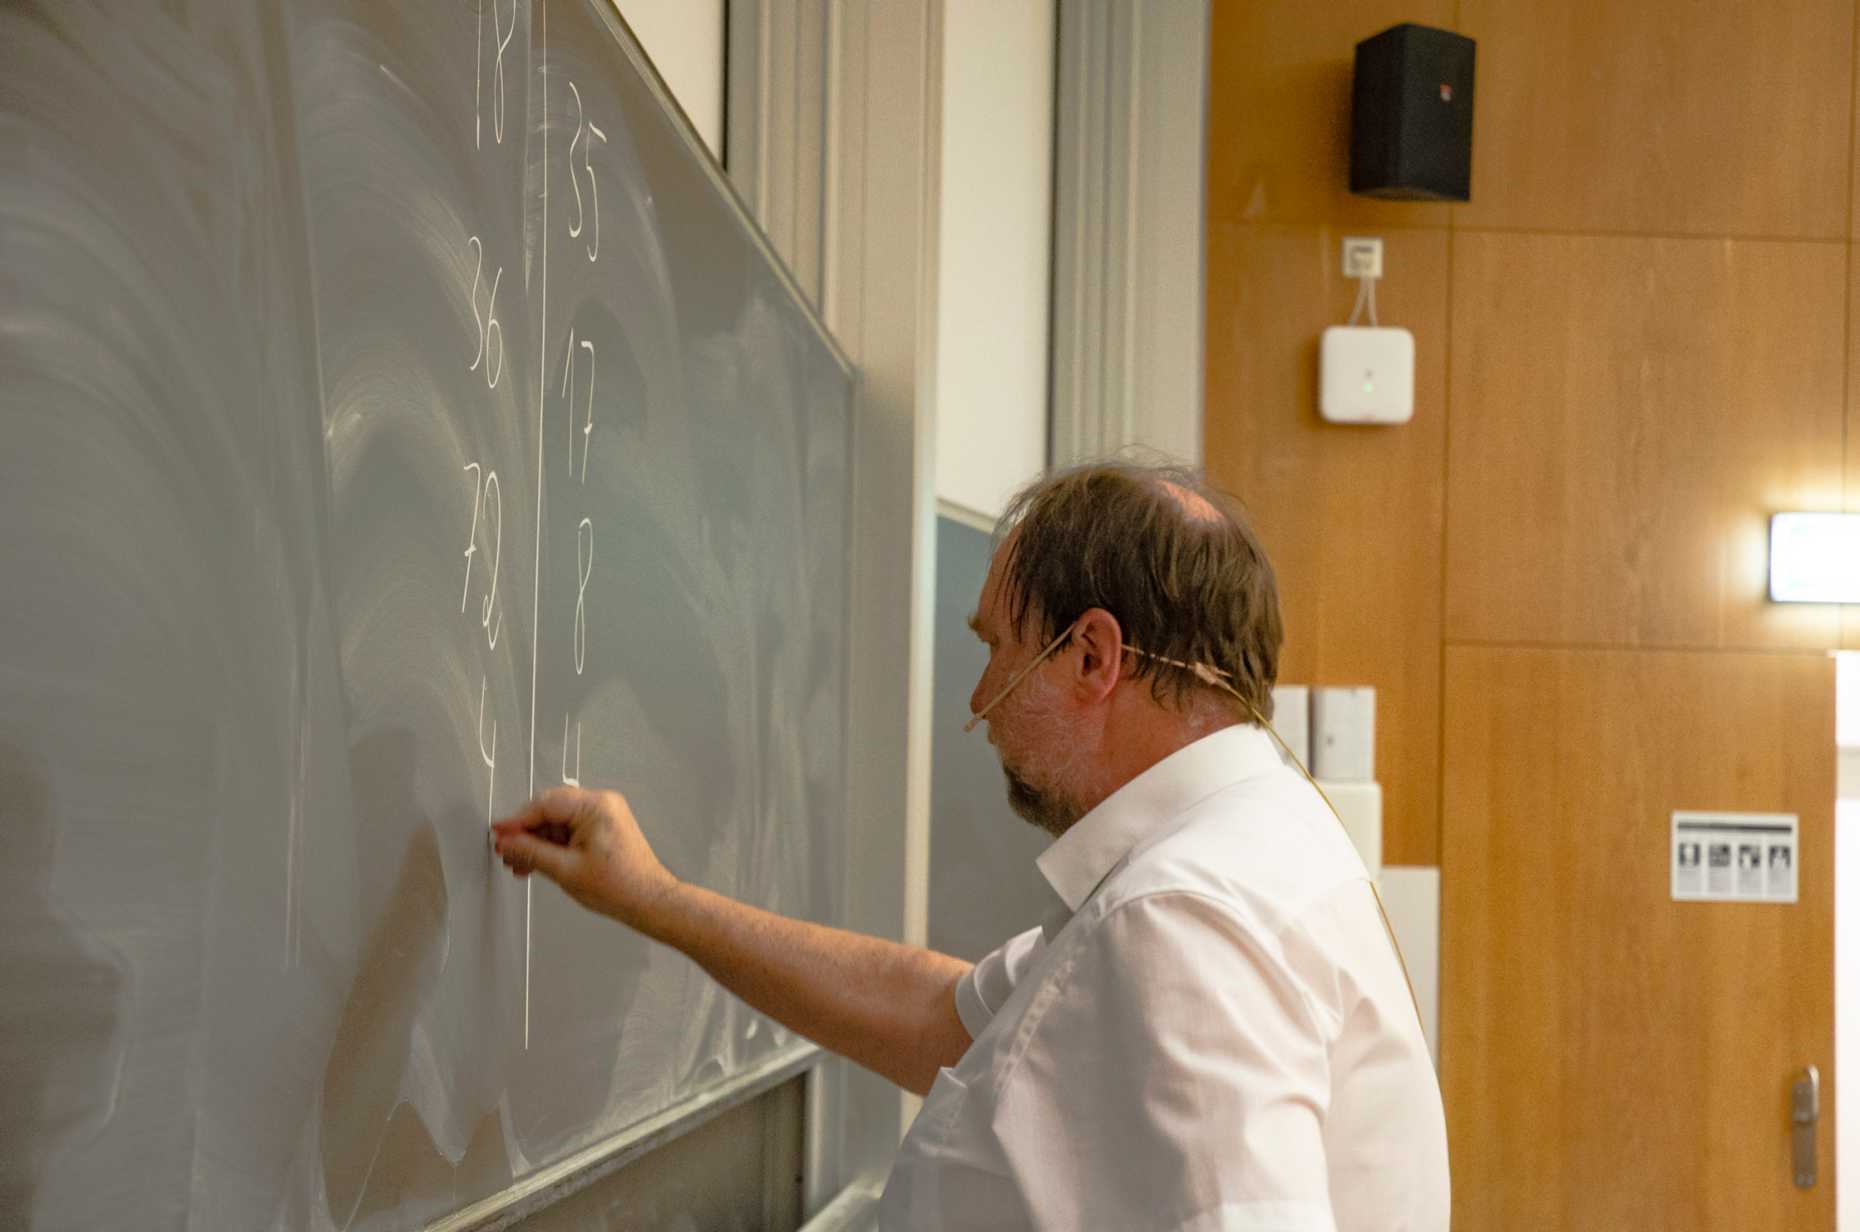 Professor Friedemann Mattern demonstrates an algorithm on the blackboard